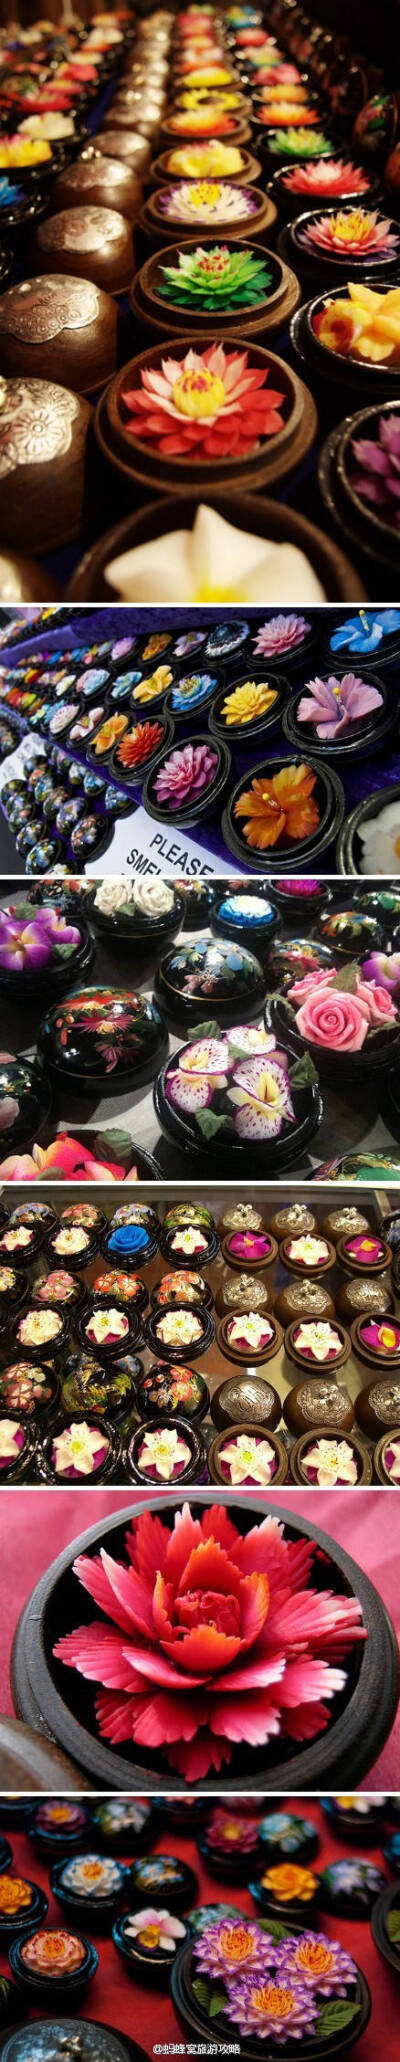 owl【杂货铺】【泰国香皂花】几乎在泰国游记里出镜率百分之百。。没错，这就是用香皂做成各种花形花朵，是泰国的一种传统手工艺品，它起源于清莱附近的村庄，农闲时候，人们制作肥皂雕刻的工艺品，这样的爱好逐渐演…